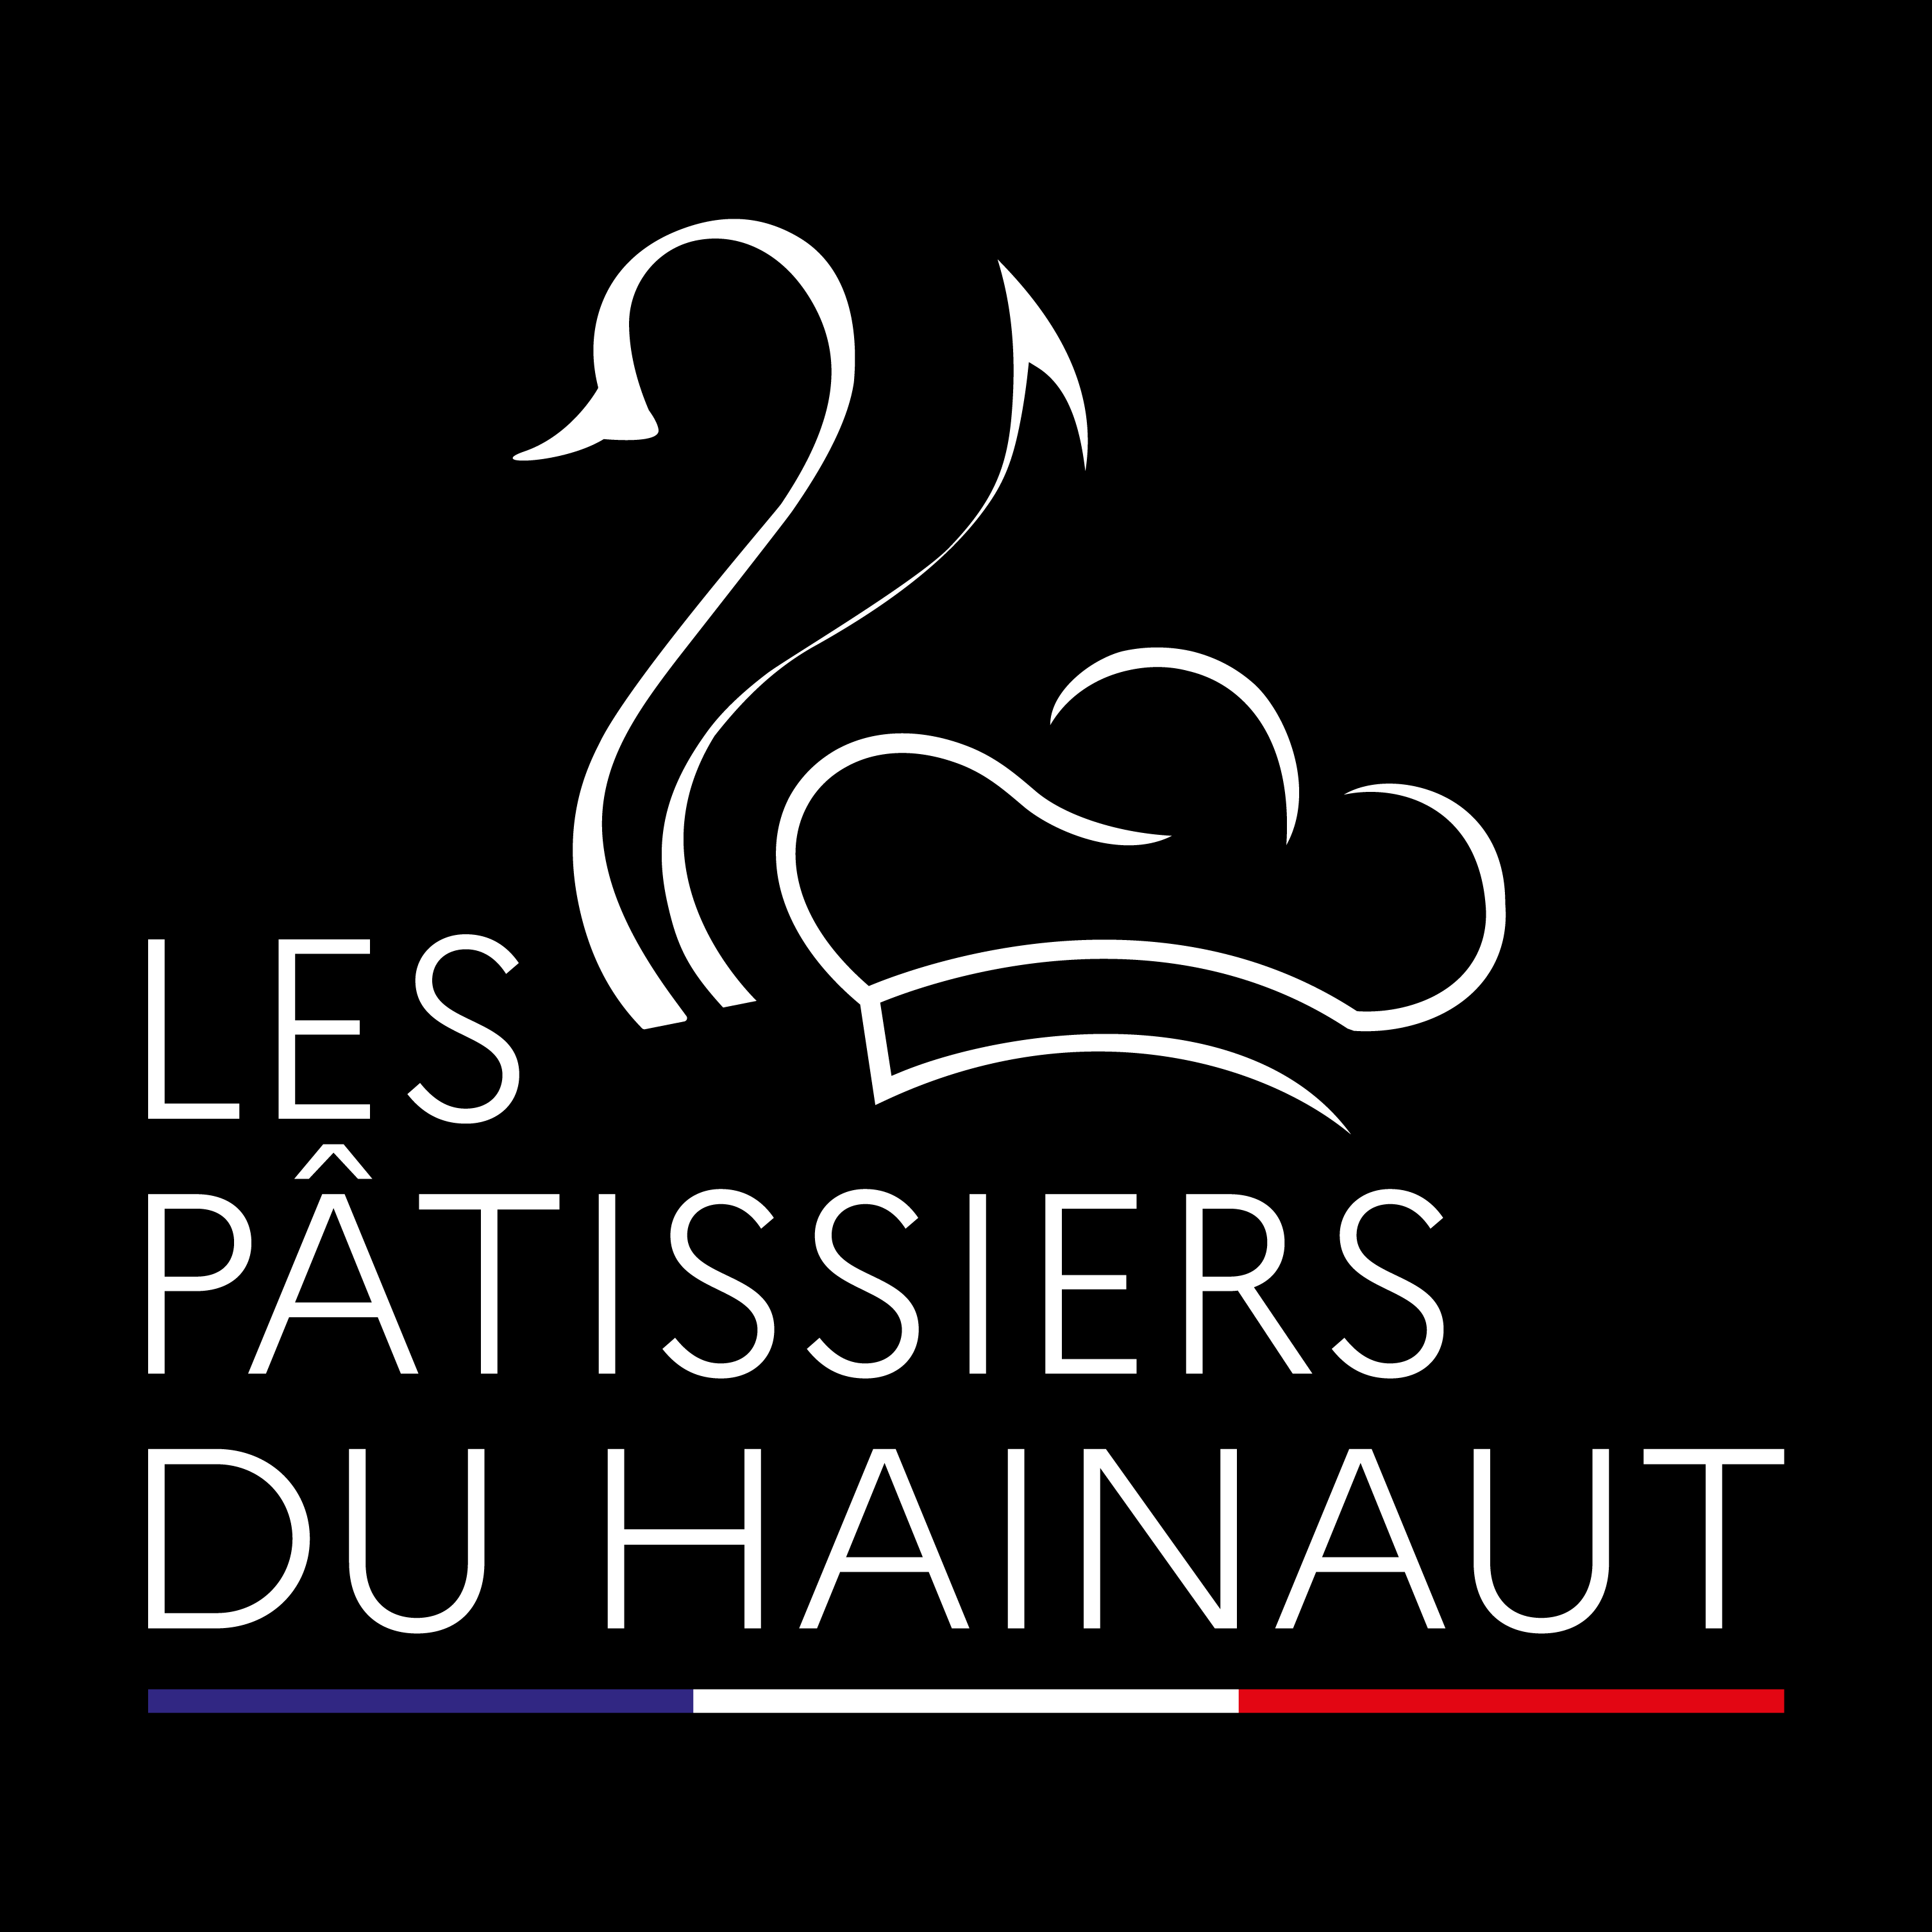 Les Pâtissiers du Hainaut